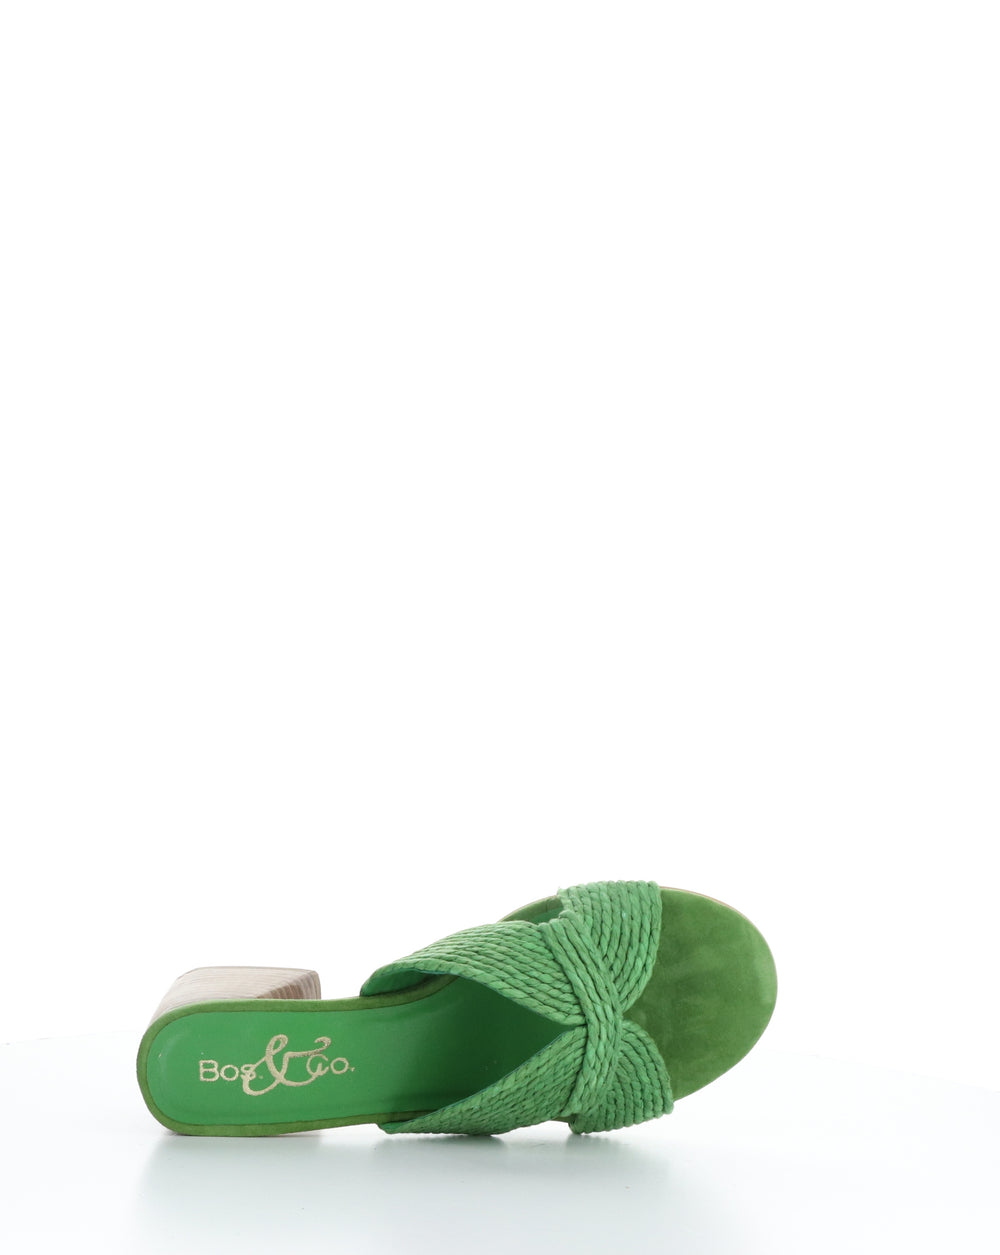 GESSA GREEN Slip-on Sandals